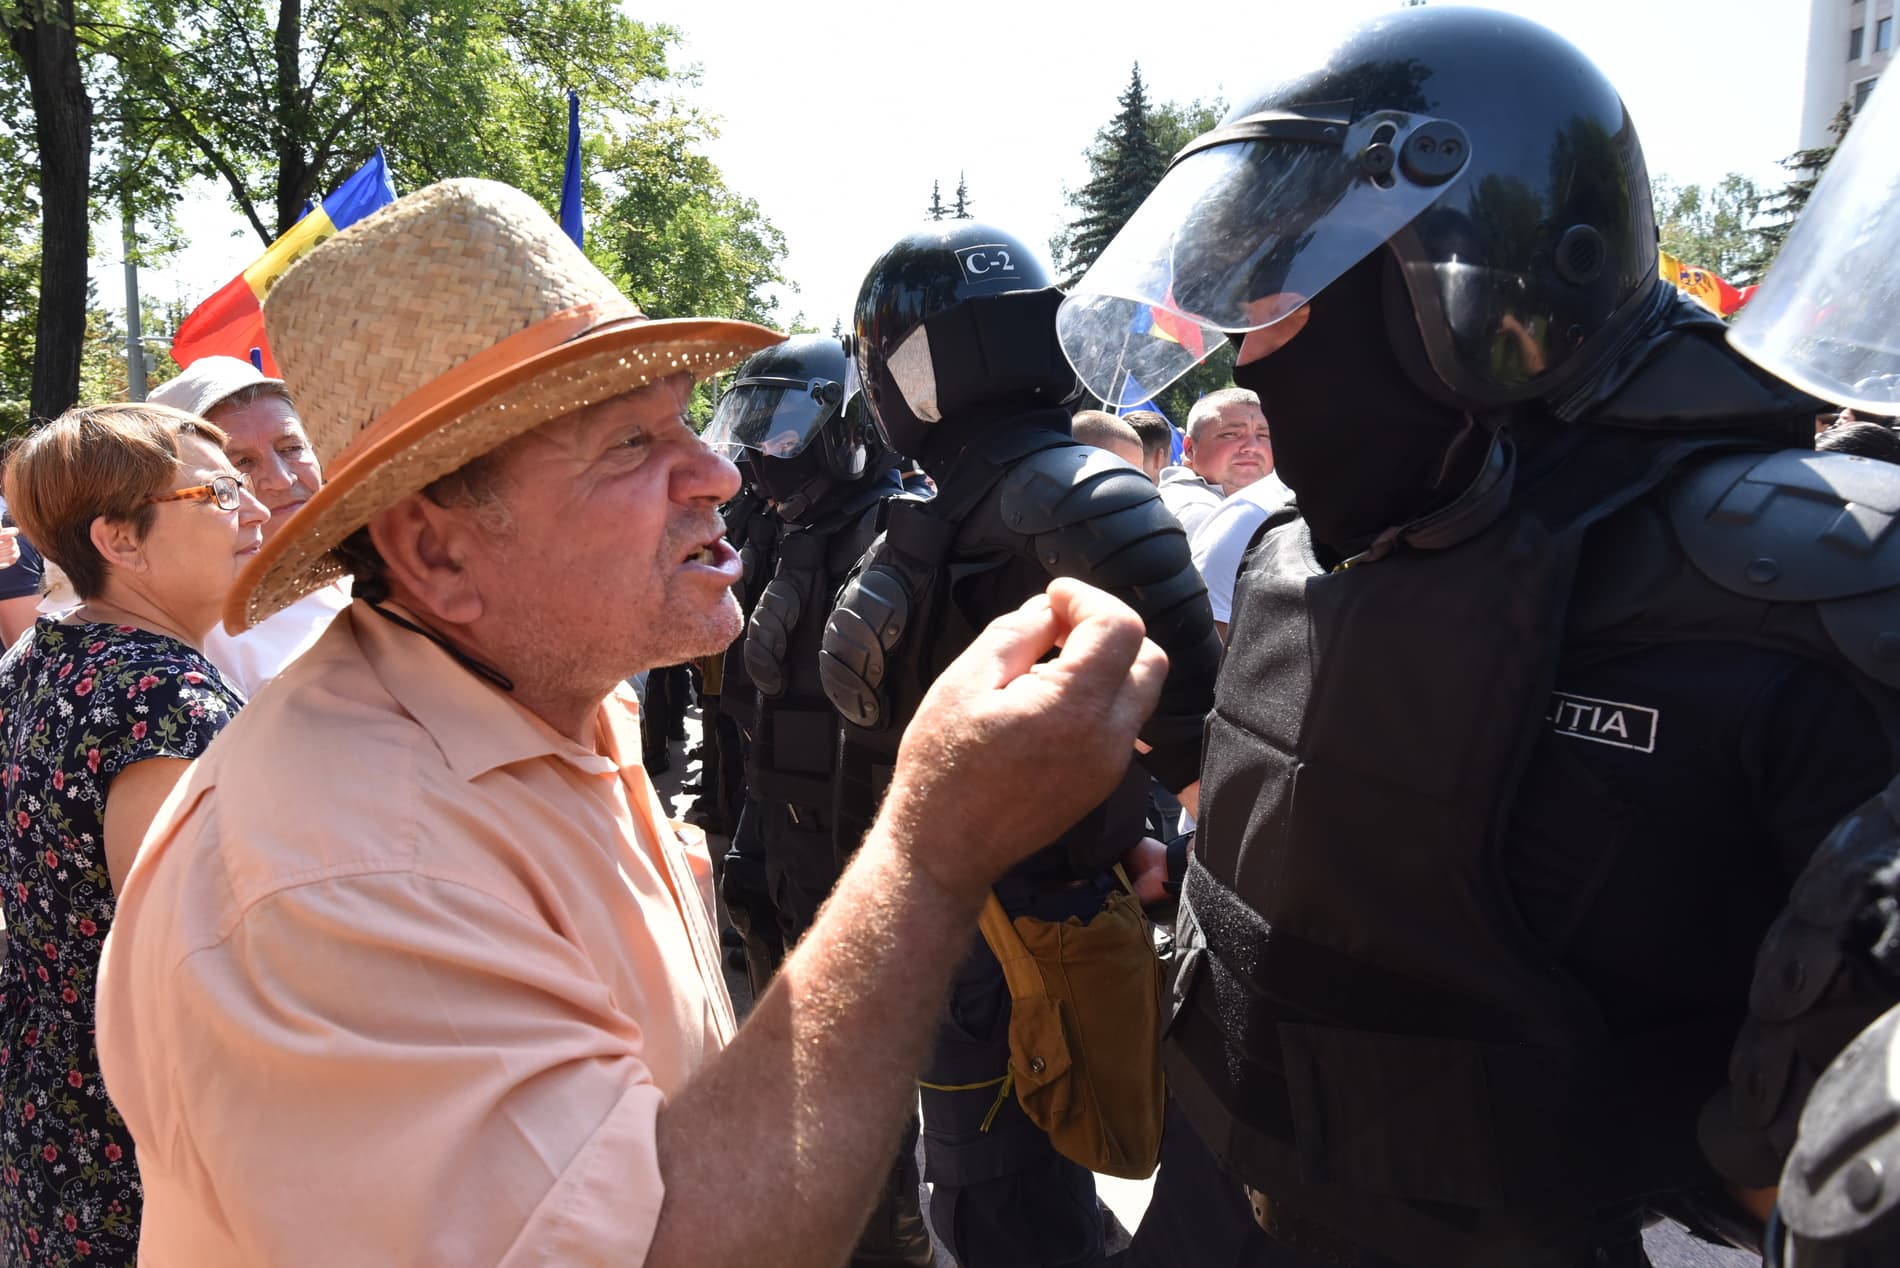 Protestors Confront Police (source: RISE Moldova)